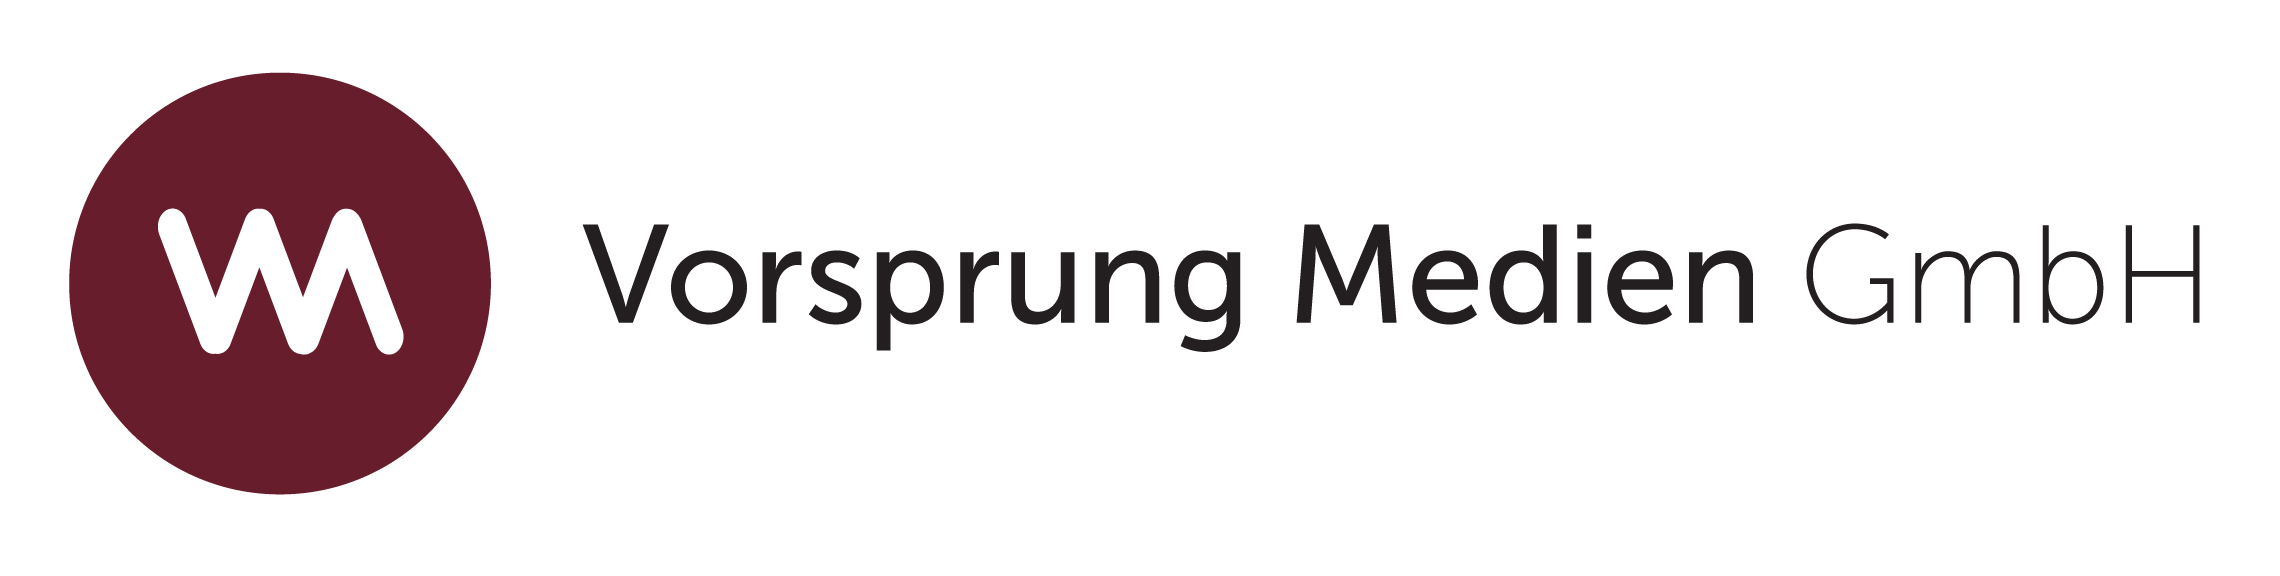 Vorsprung Medien GmbH